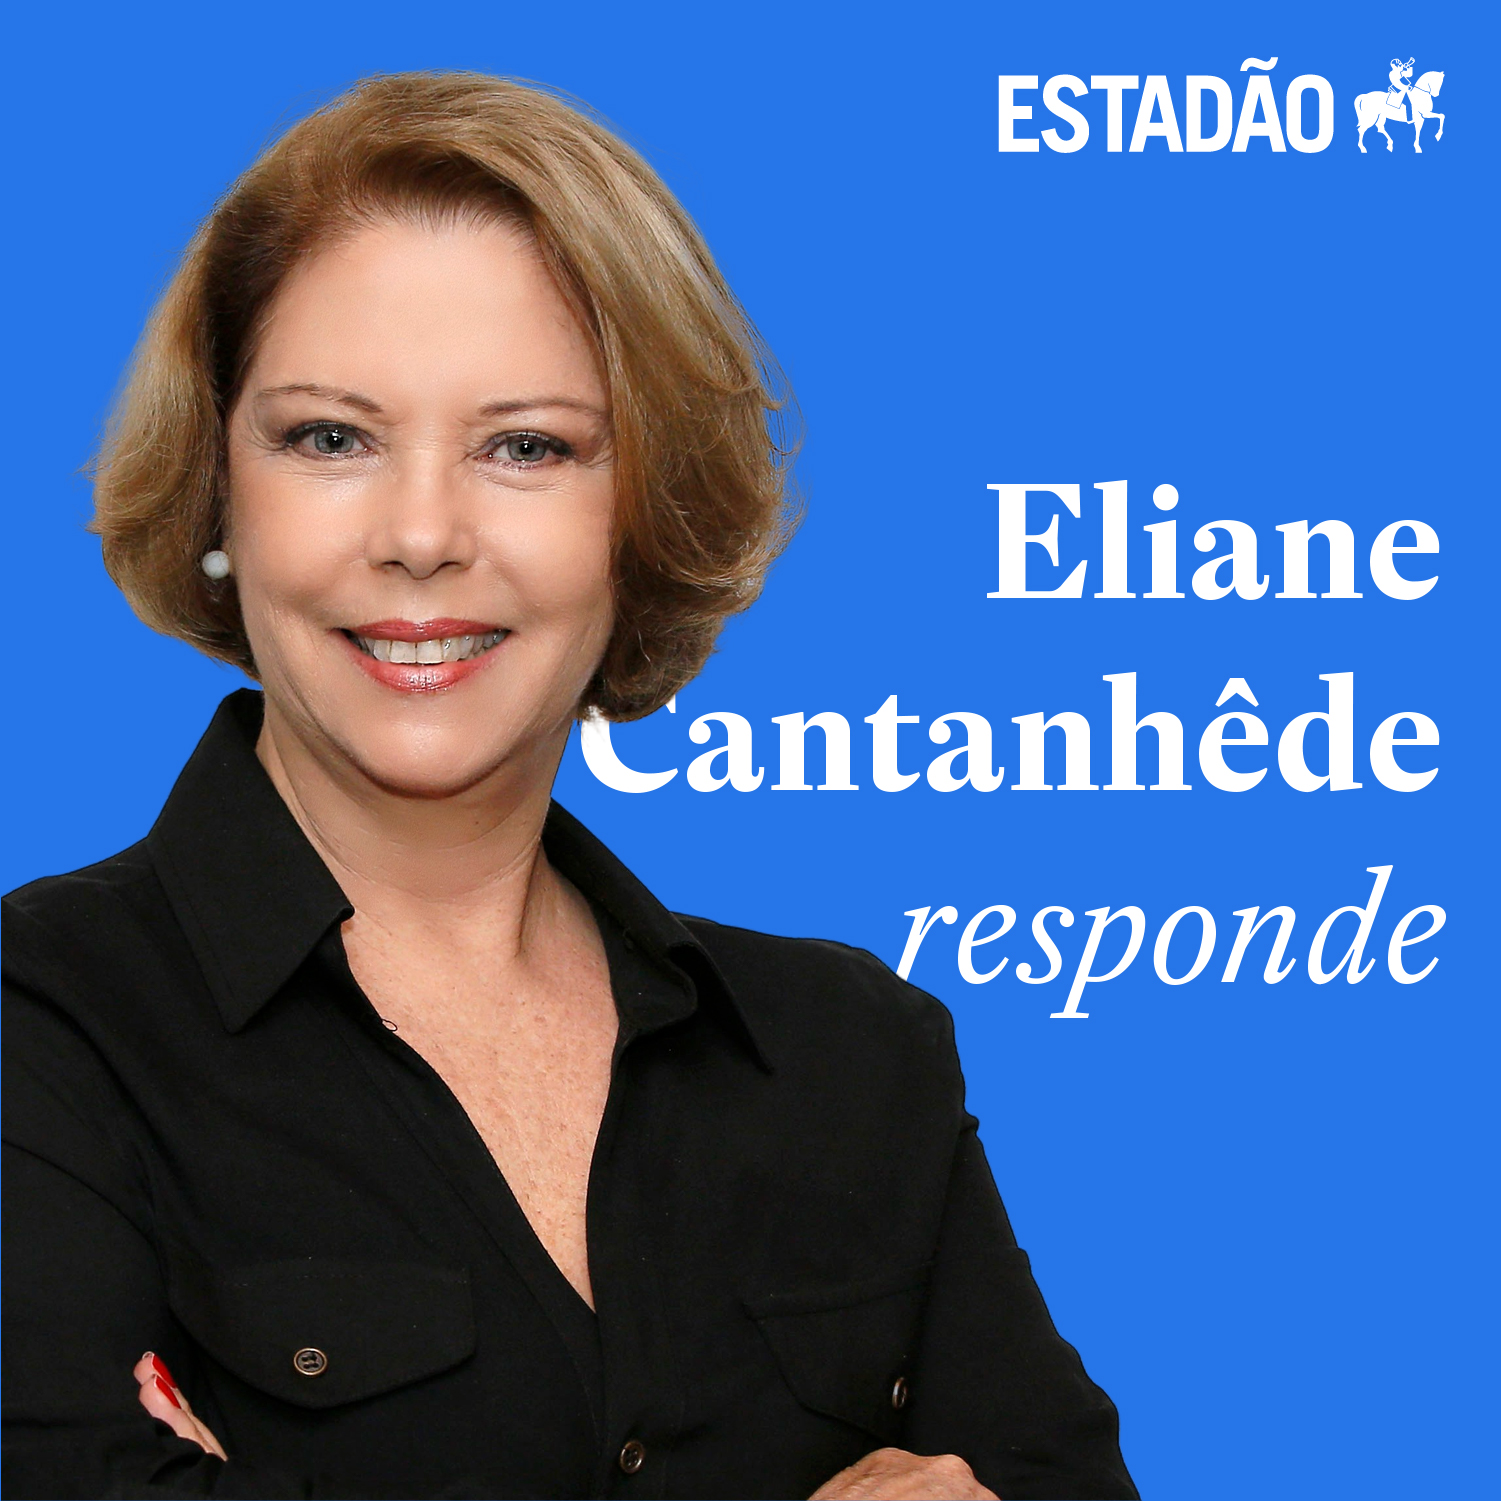 Eliane analisa estratégia pensada sobre o caso Silveira: “Há intensas conversas para uma saída negociada entre os poderes”